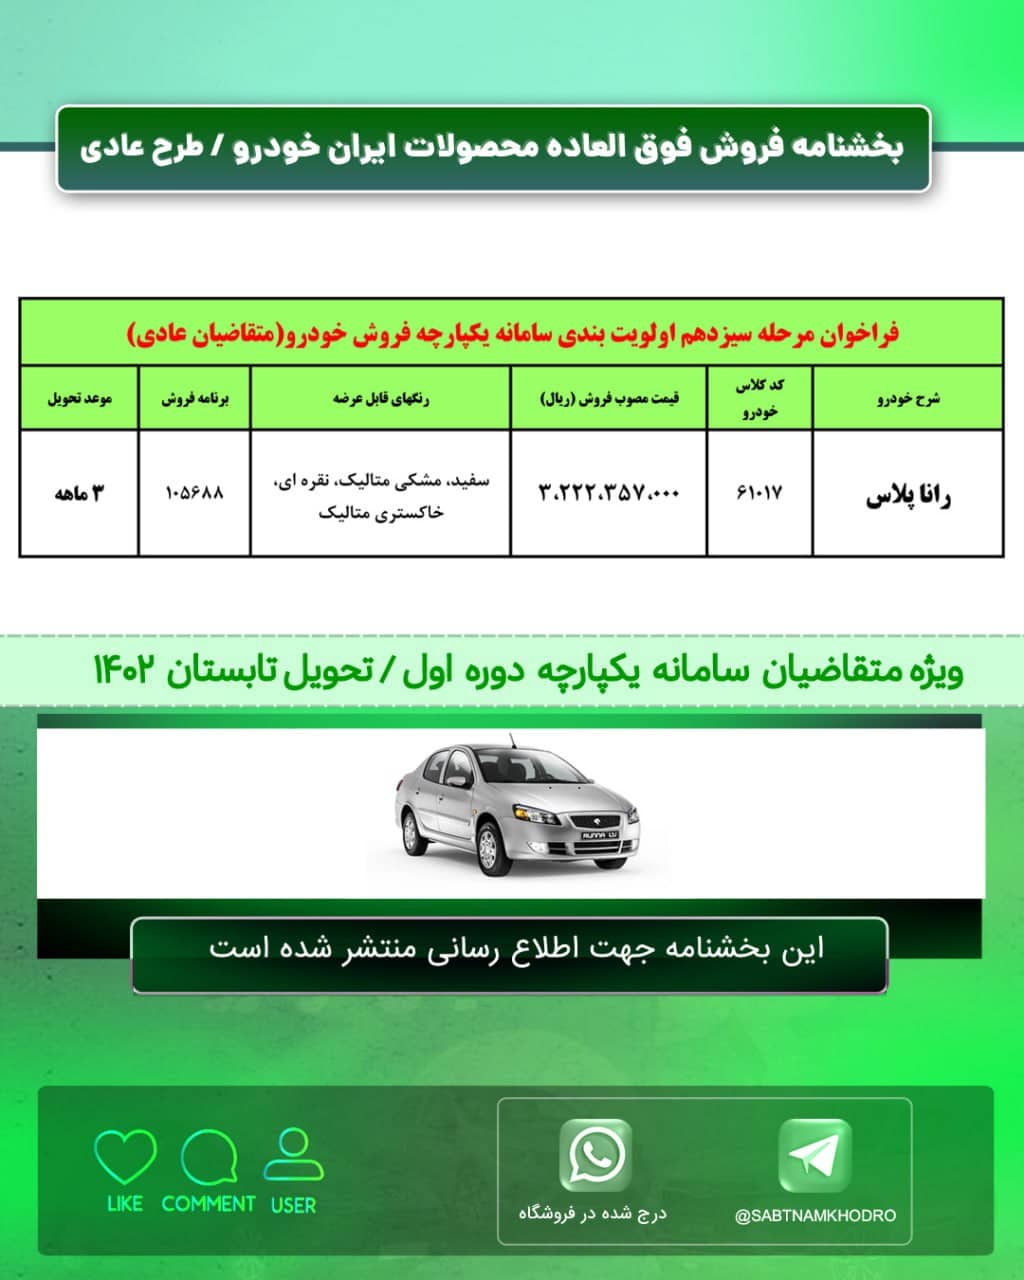 فراخوان مرحله سیزدهم ثبت نام جدید ایران خودرو طرح حمایت از خانواده